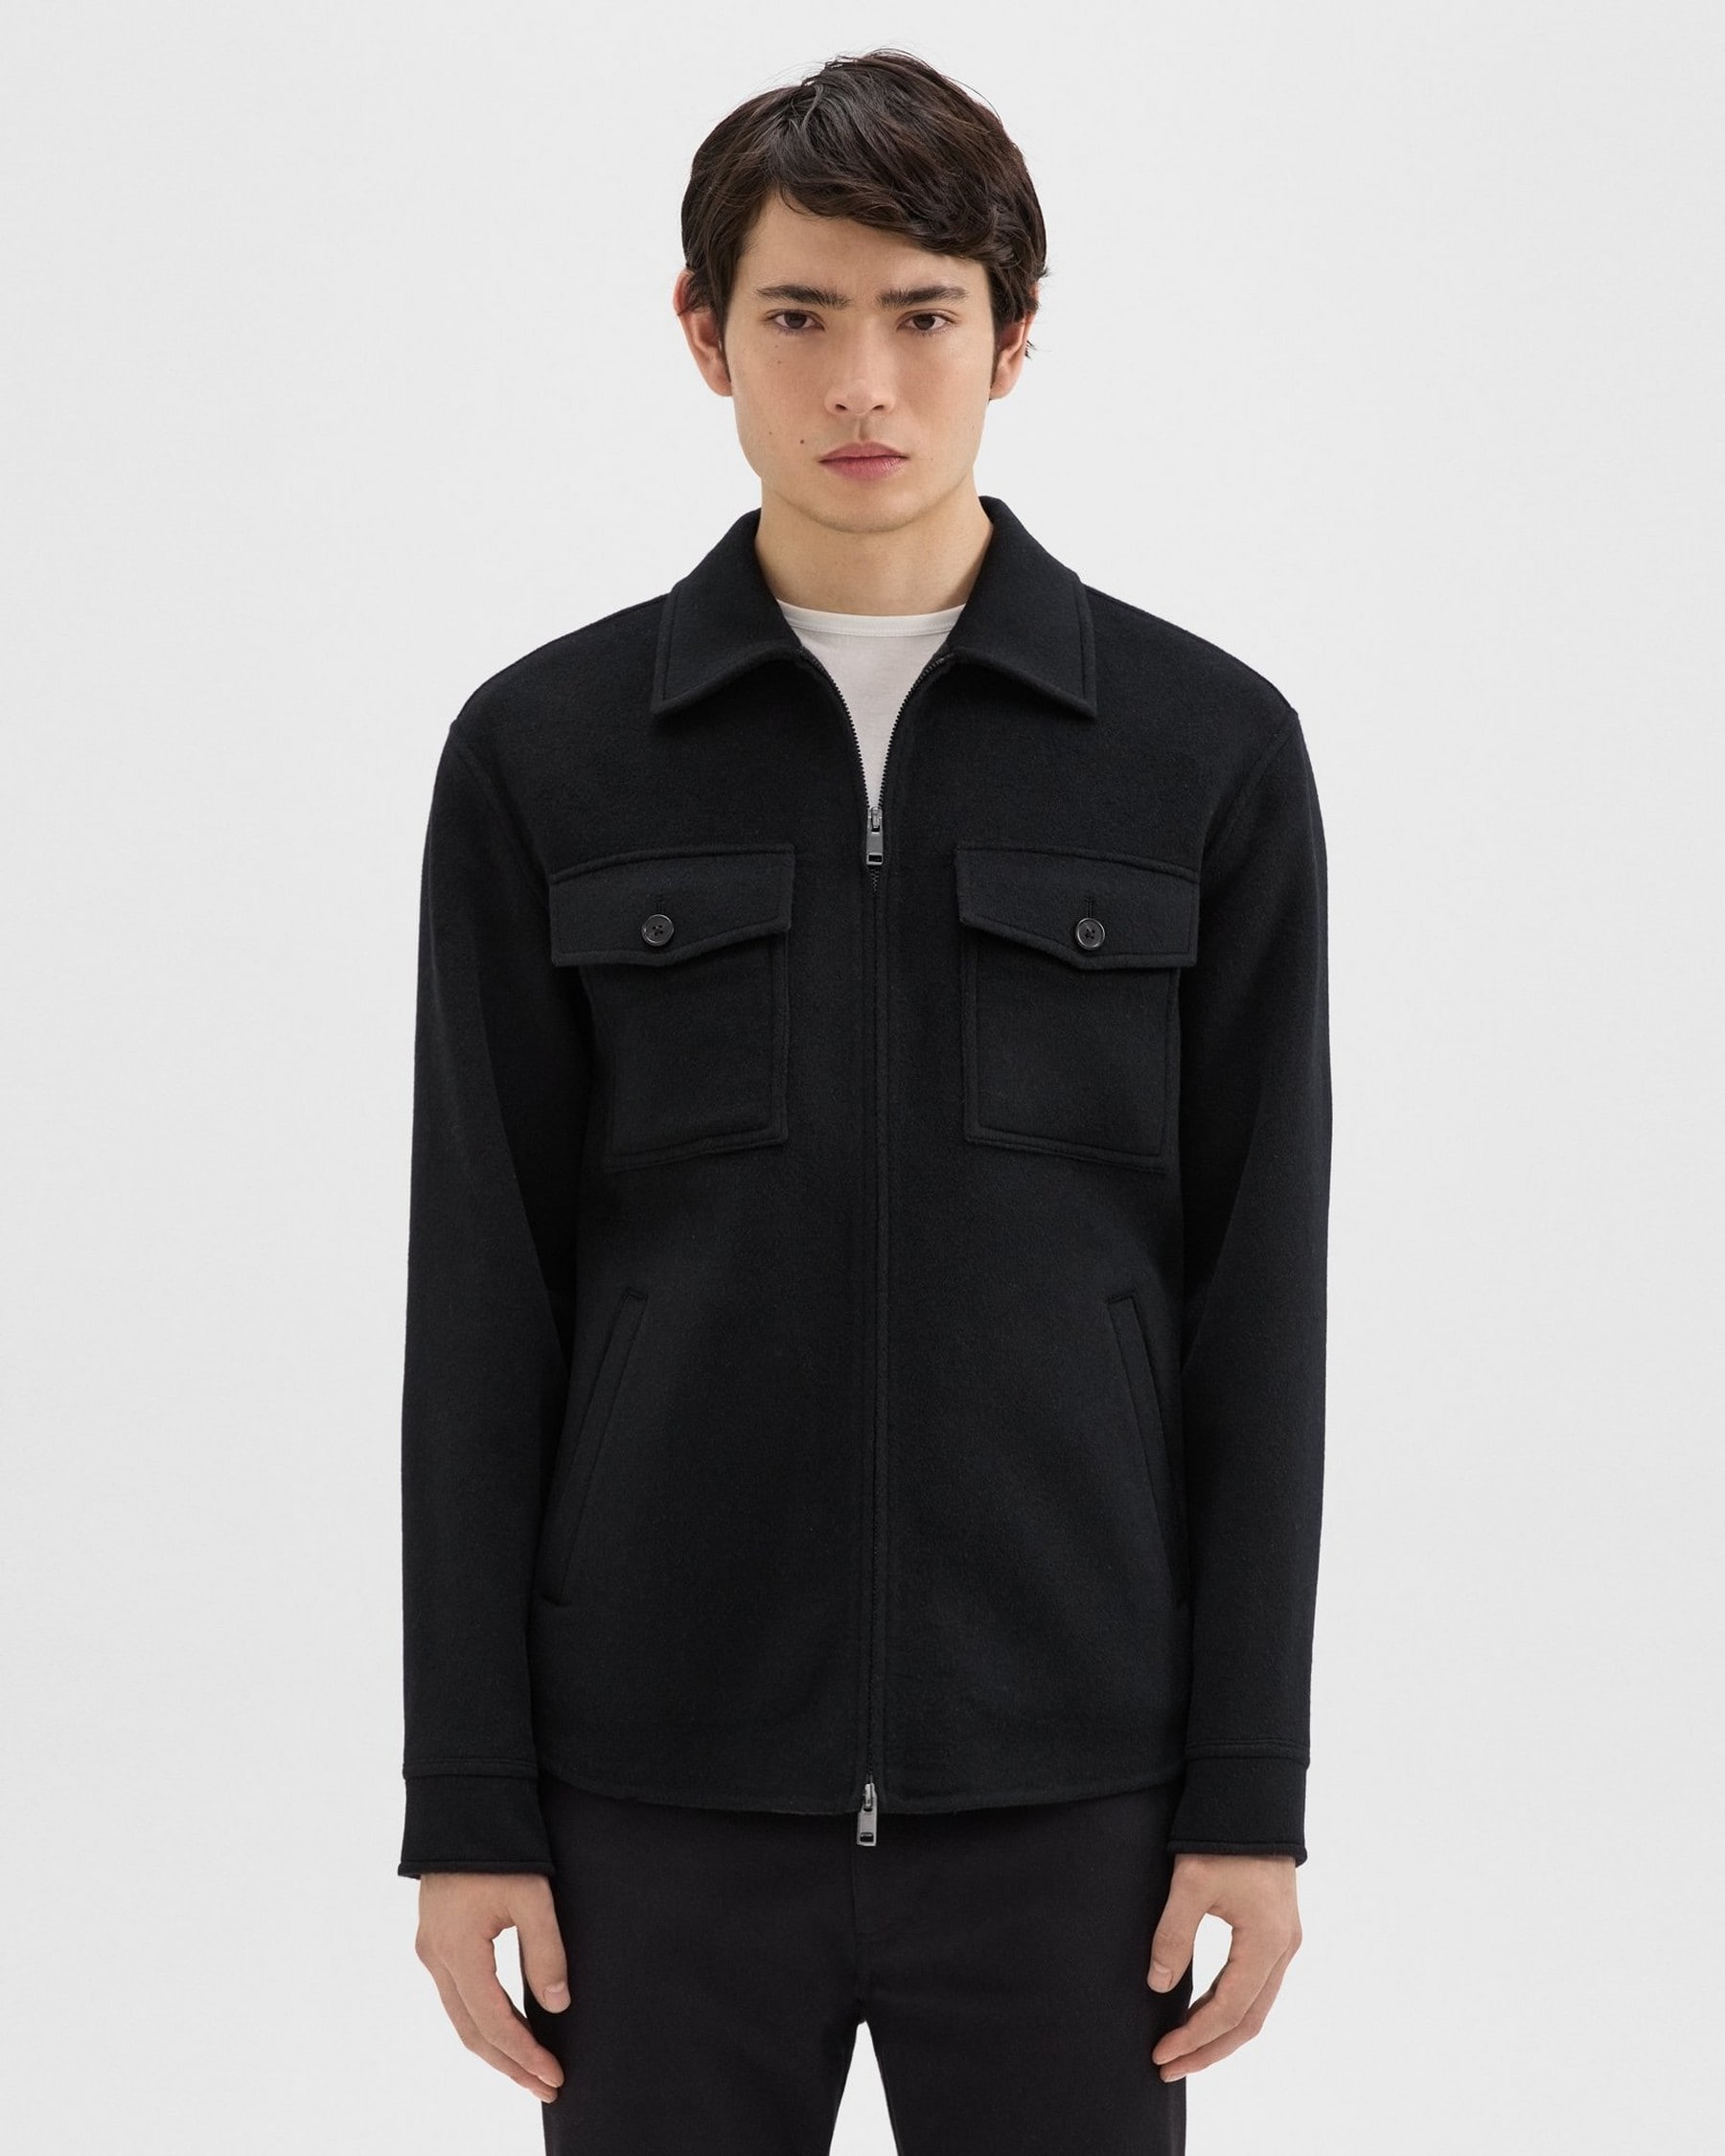 띠어리 Theory Vena Shirt Jacket in Double-Face Wool-Cashmere,BLACK/DK CHARCOAL MEL